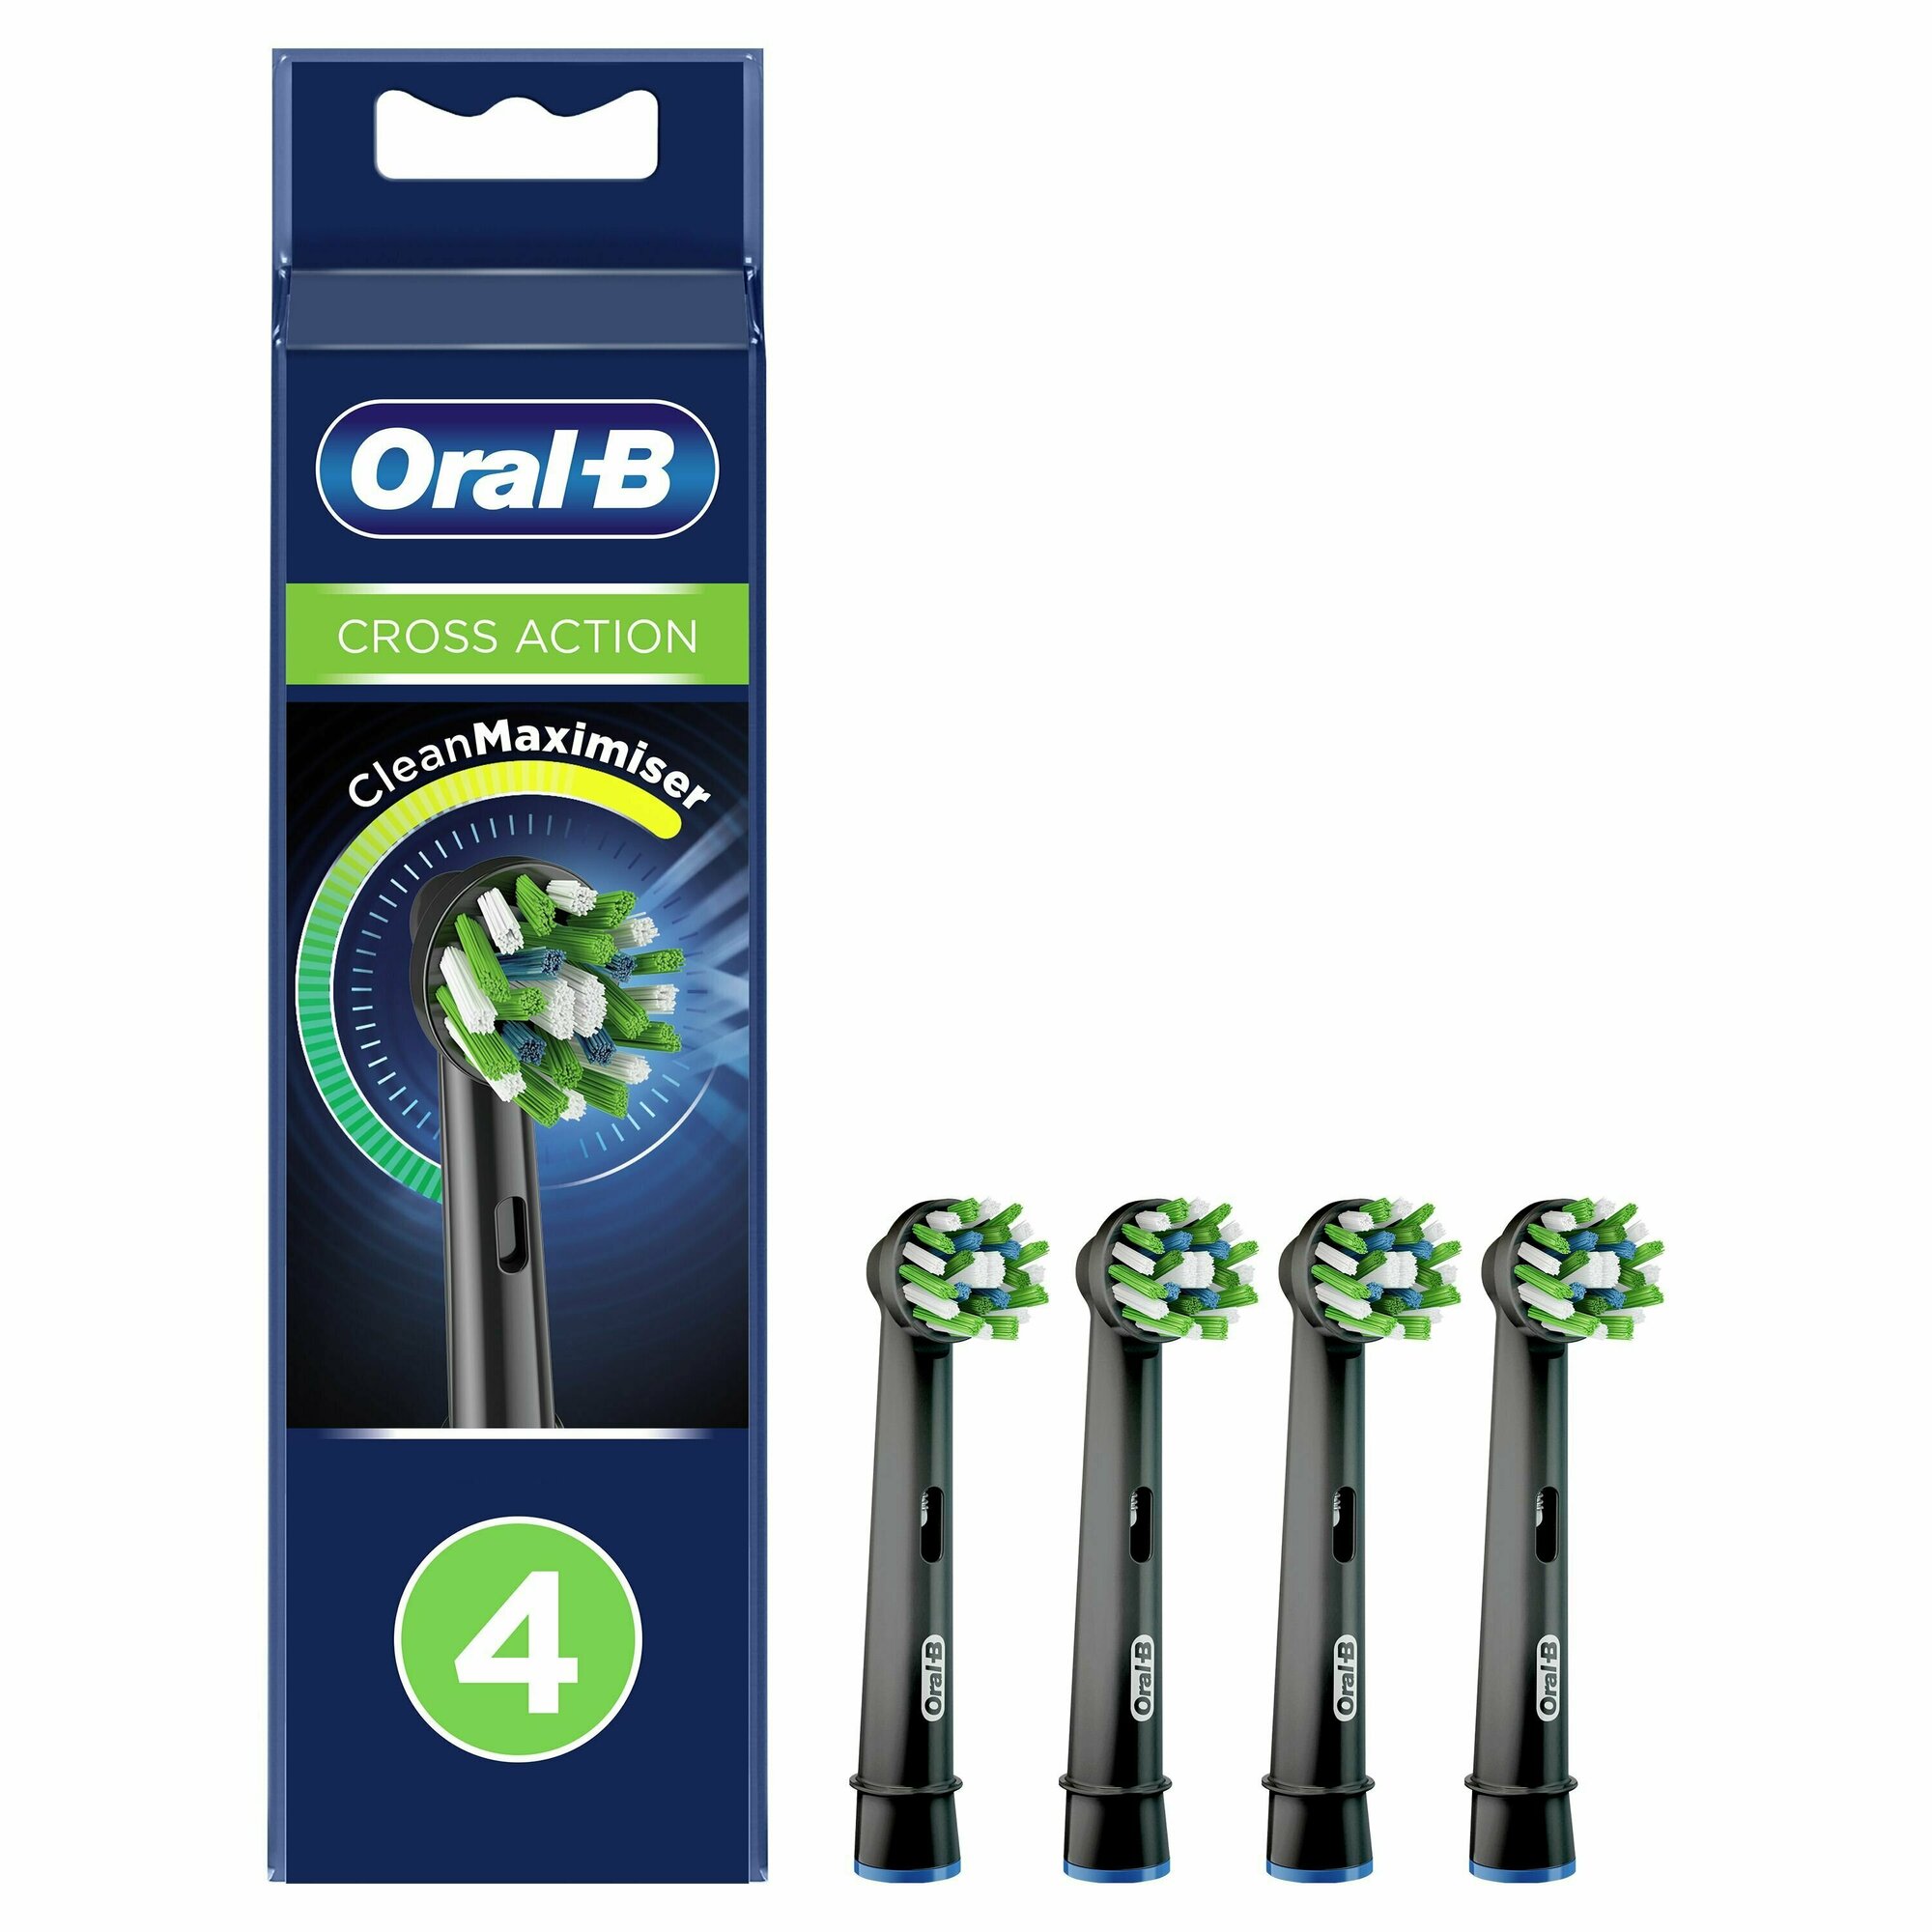 Оригинальные насадки Oral-B Сross Action CleanMaximiser Black для электрической зубной щетки, 4 шт, для тщательного удаления налета